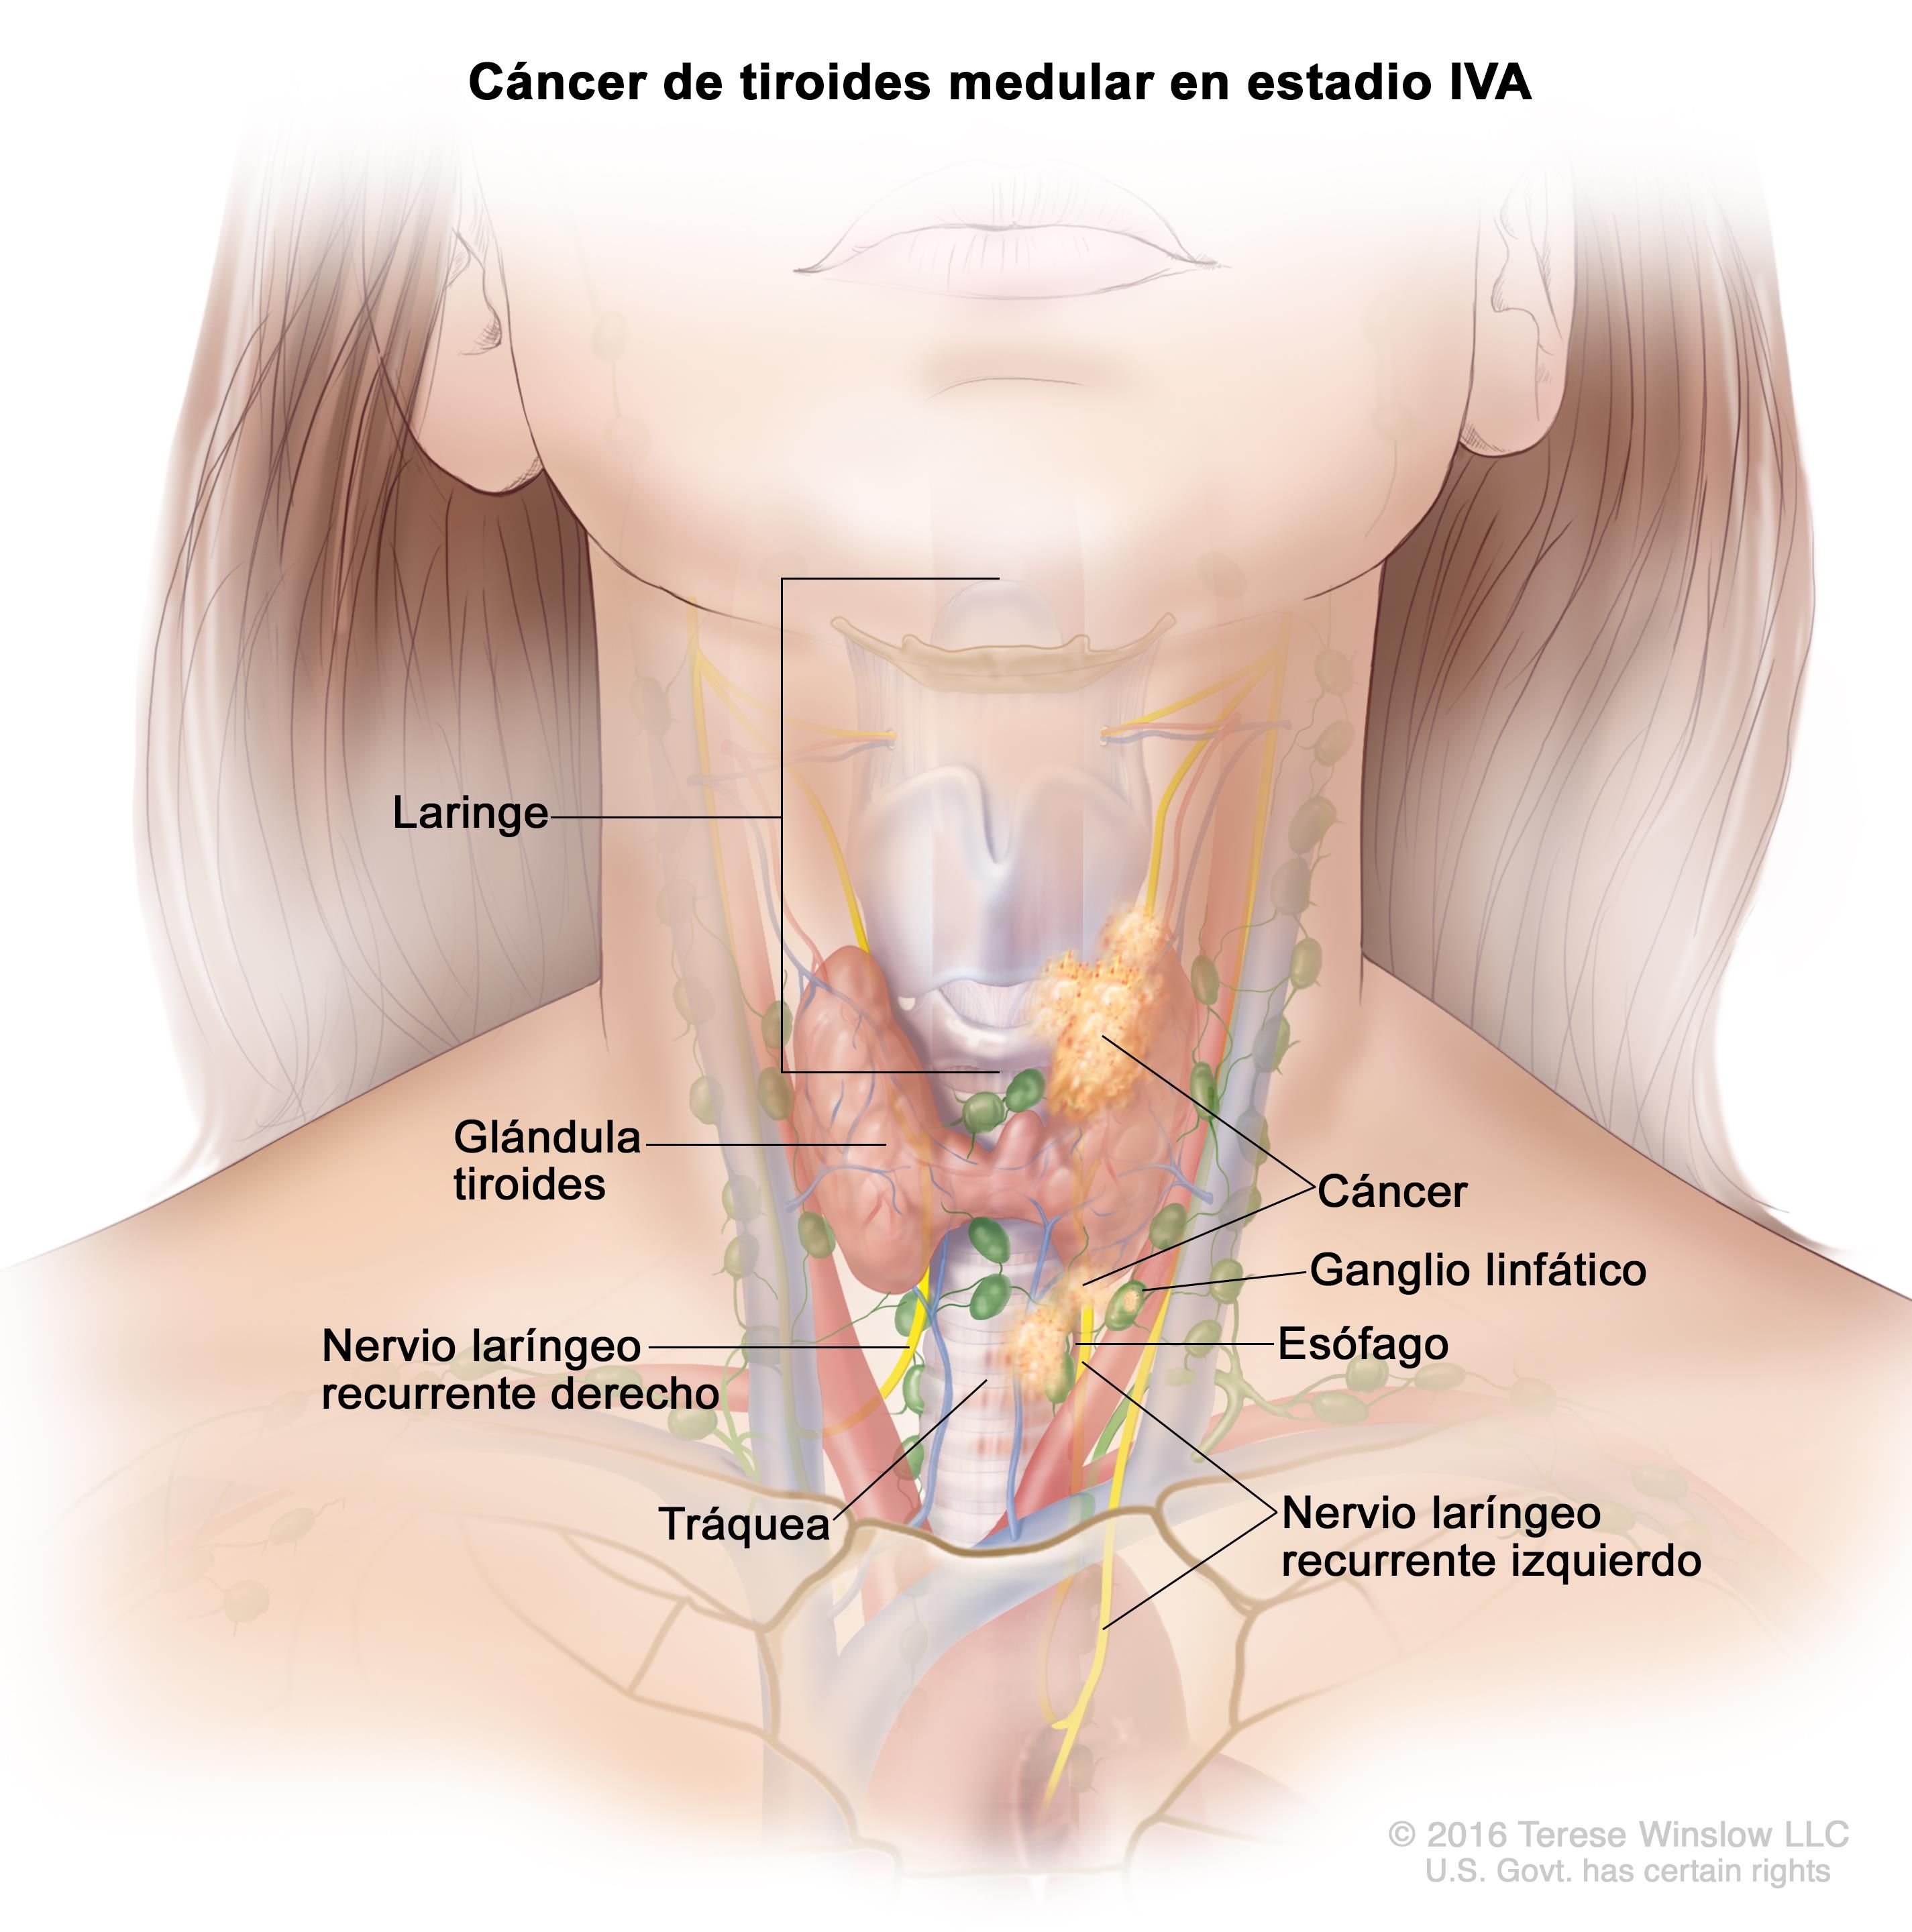 El papel del endocrino es clave para decidir el tratamiento de los carcinomas de tiroides